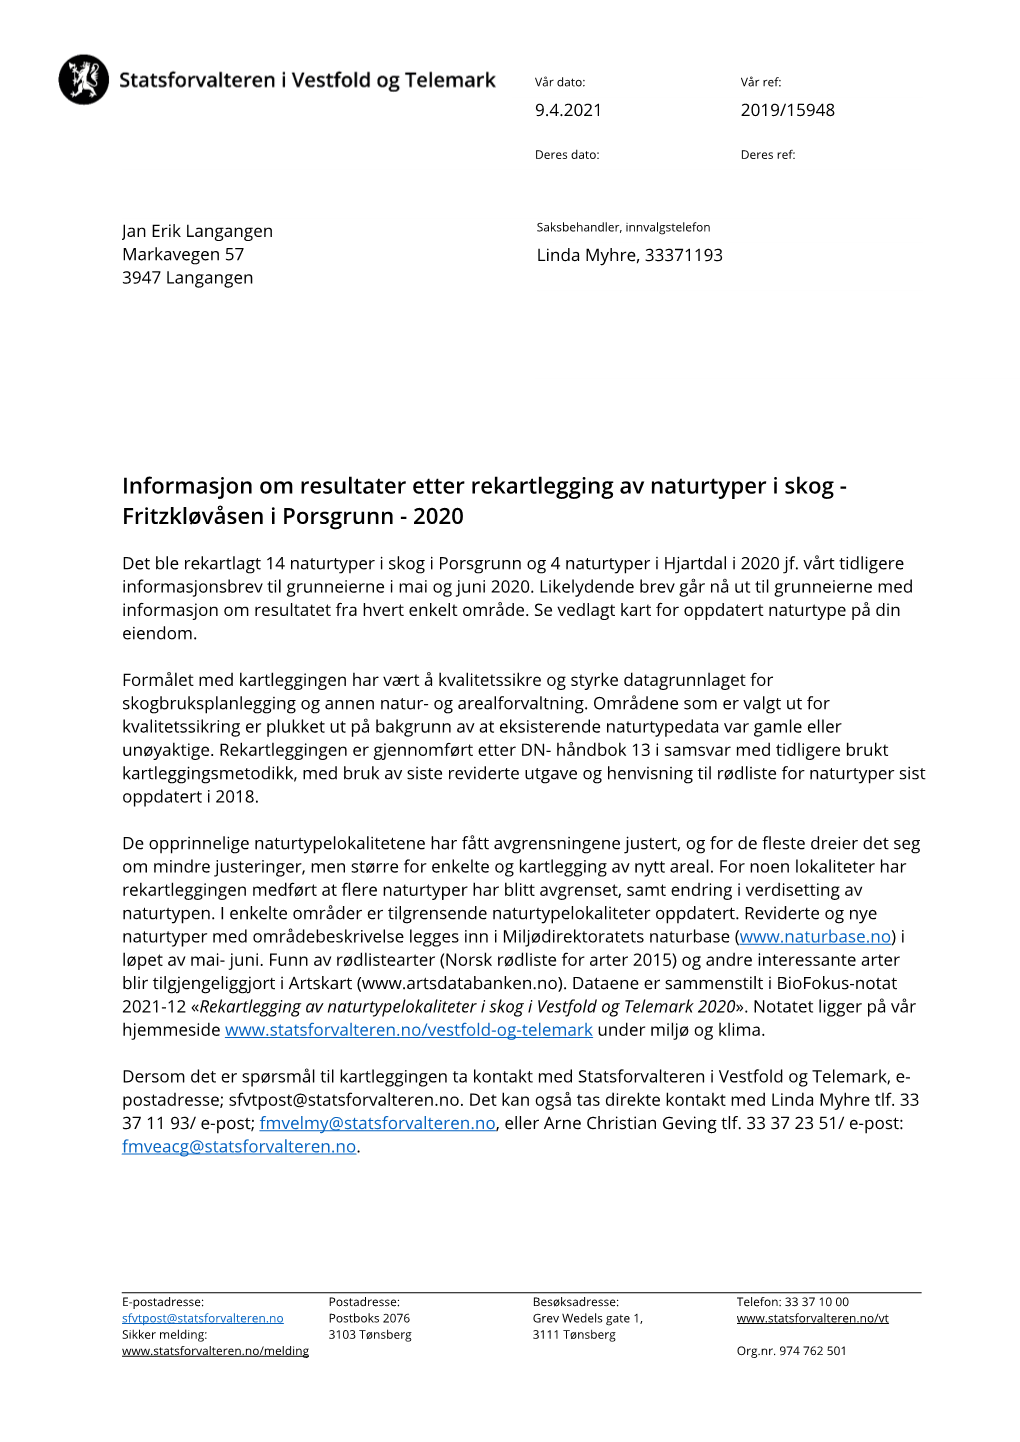 Informasjon Om Resultater Etter Rekartlegging Av Naturtyper I Skog - Fritzkløvåsen I Porsgrunn - 2020